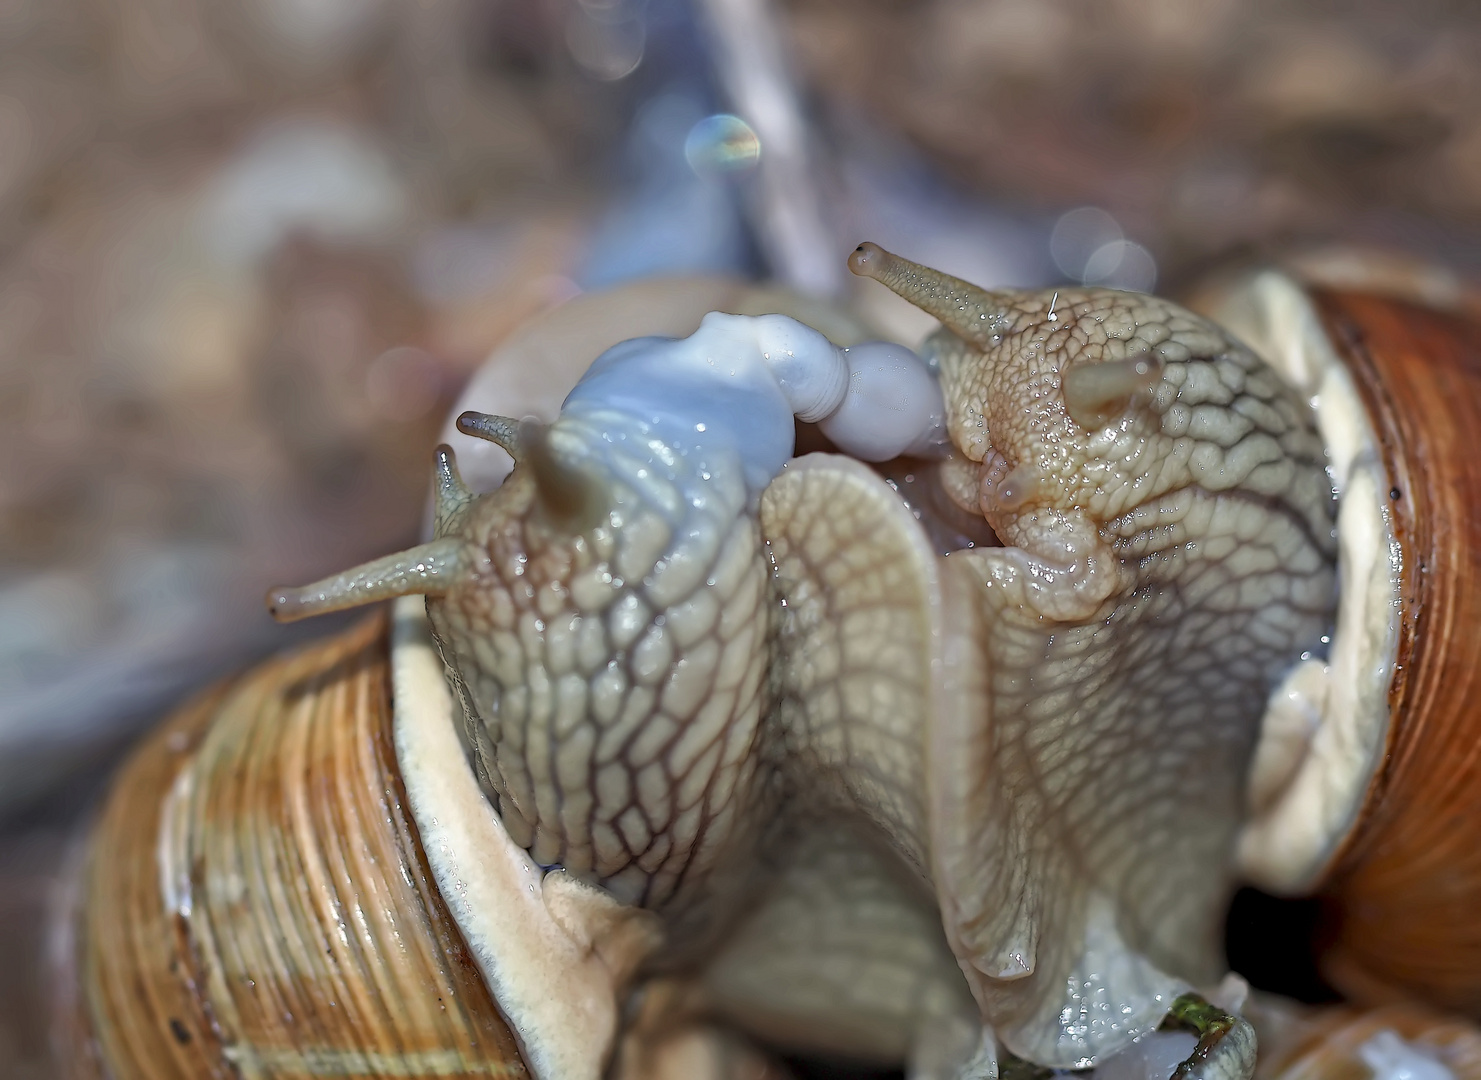 Sternstunde bei den Weinbergschnecken (Helix pomatia)  - Escargots de Bourgogne.